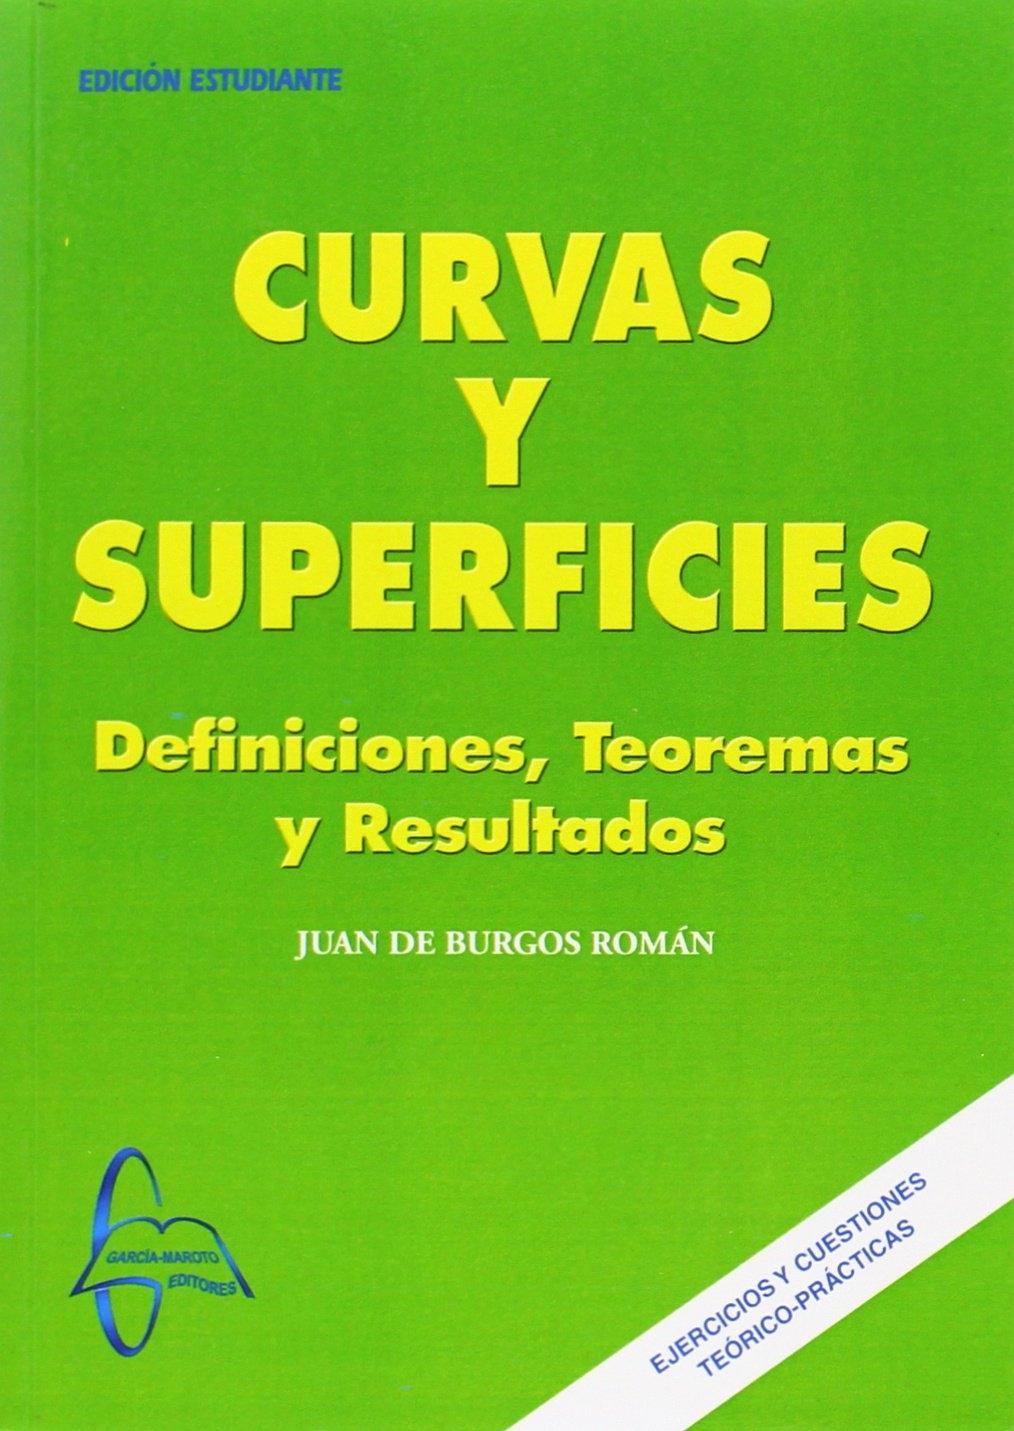 CURVAS Y SUPERFICIES "DEFINICIONES, TEOREMAS Y RESULTADOS"